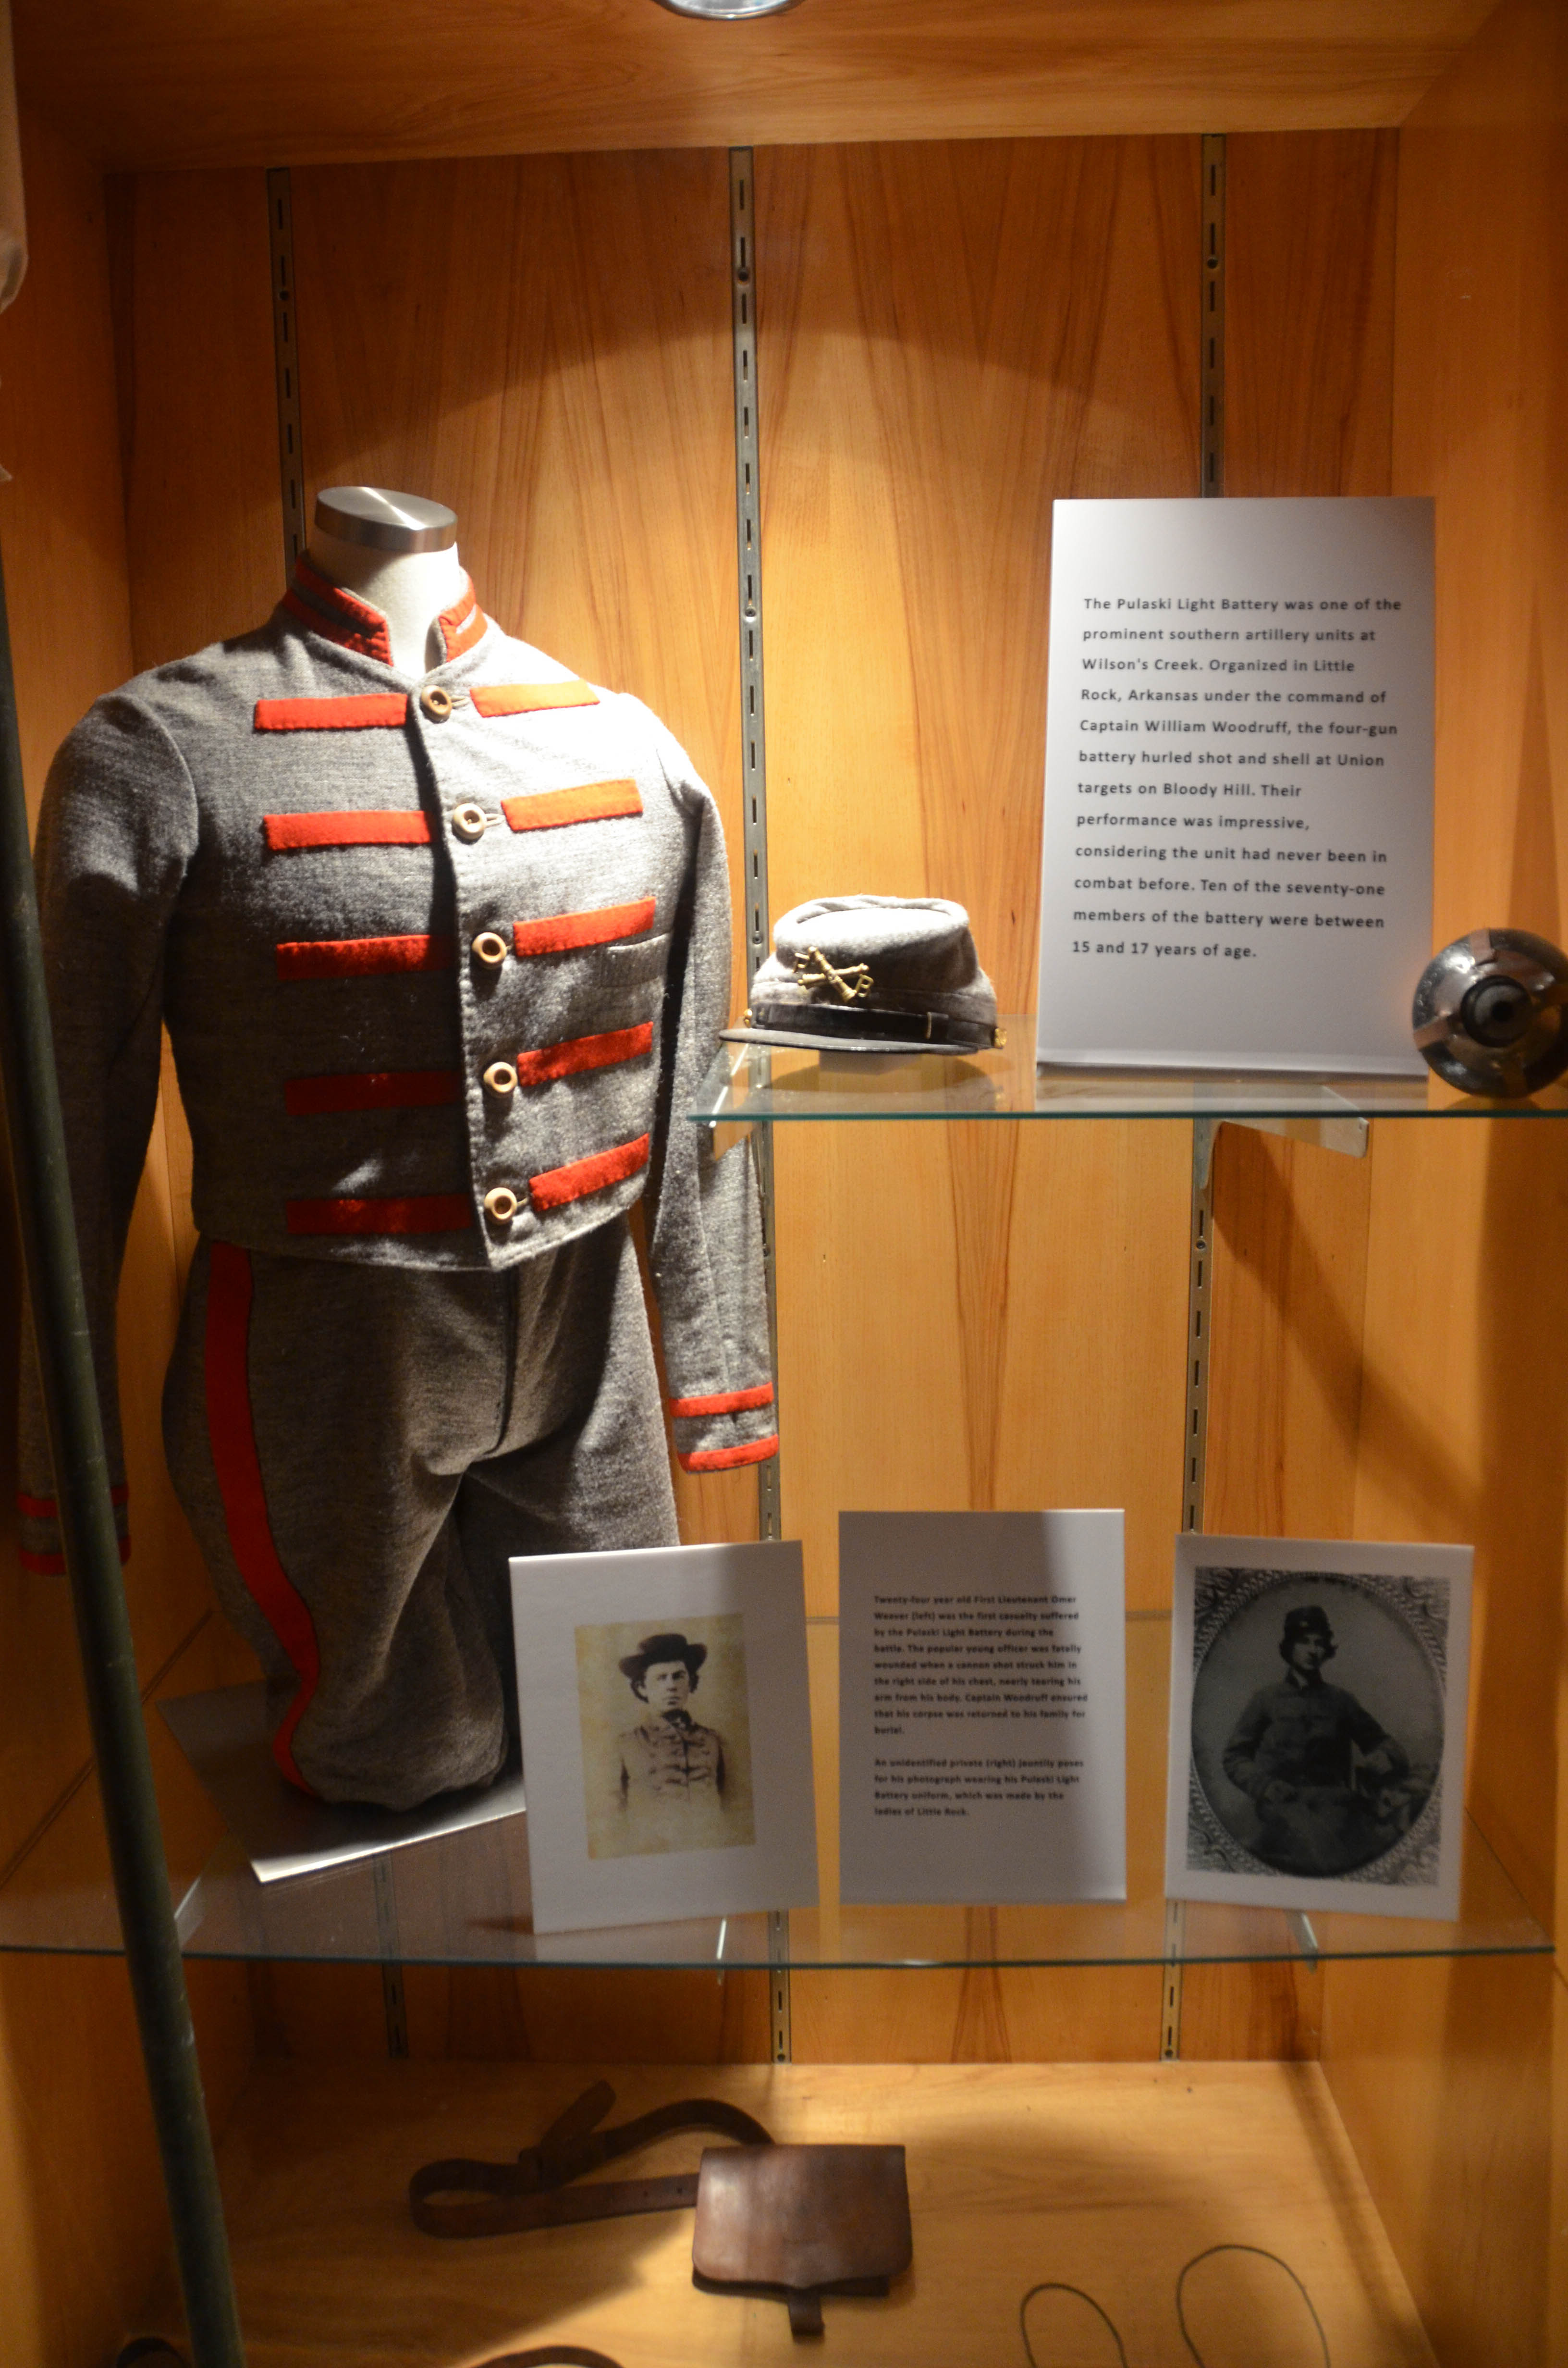 The confederate uniforms were gray.